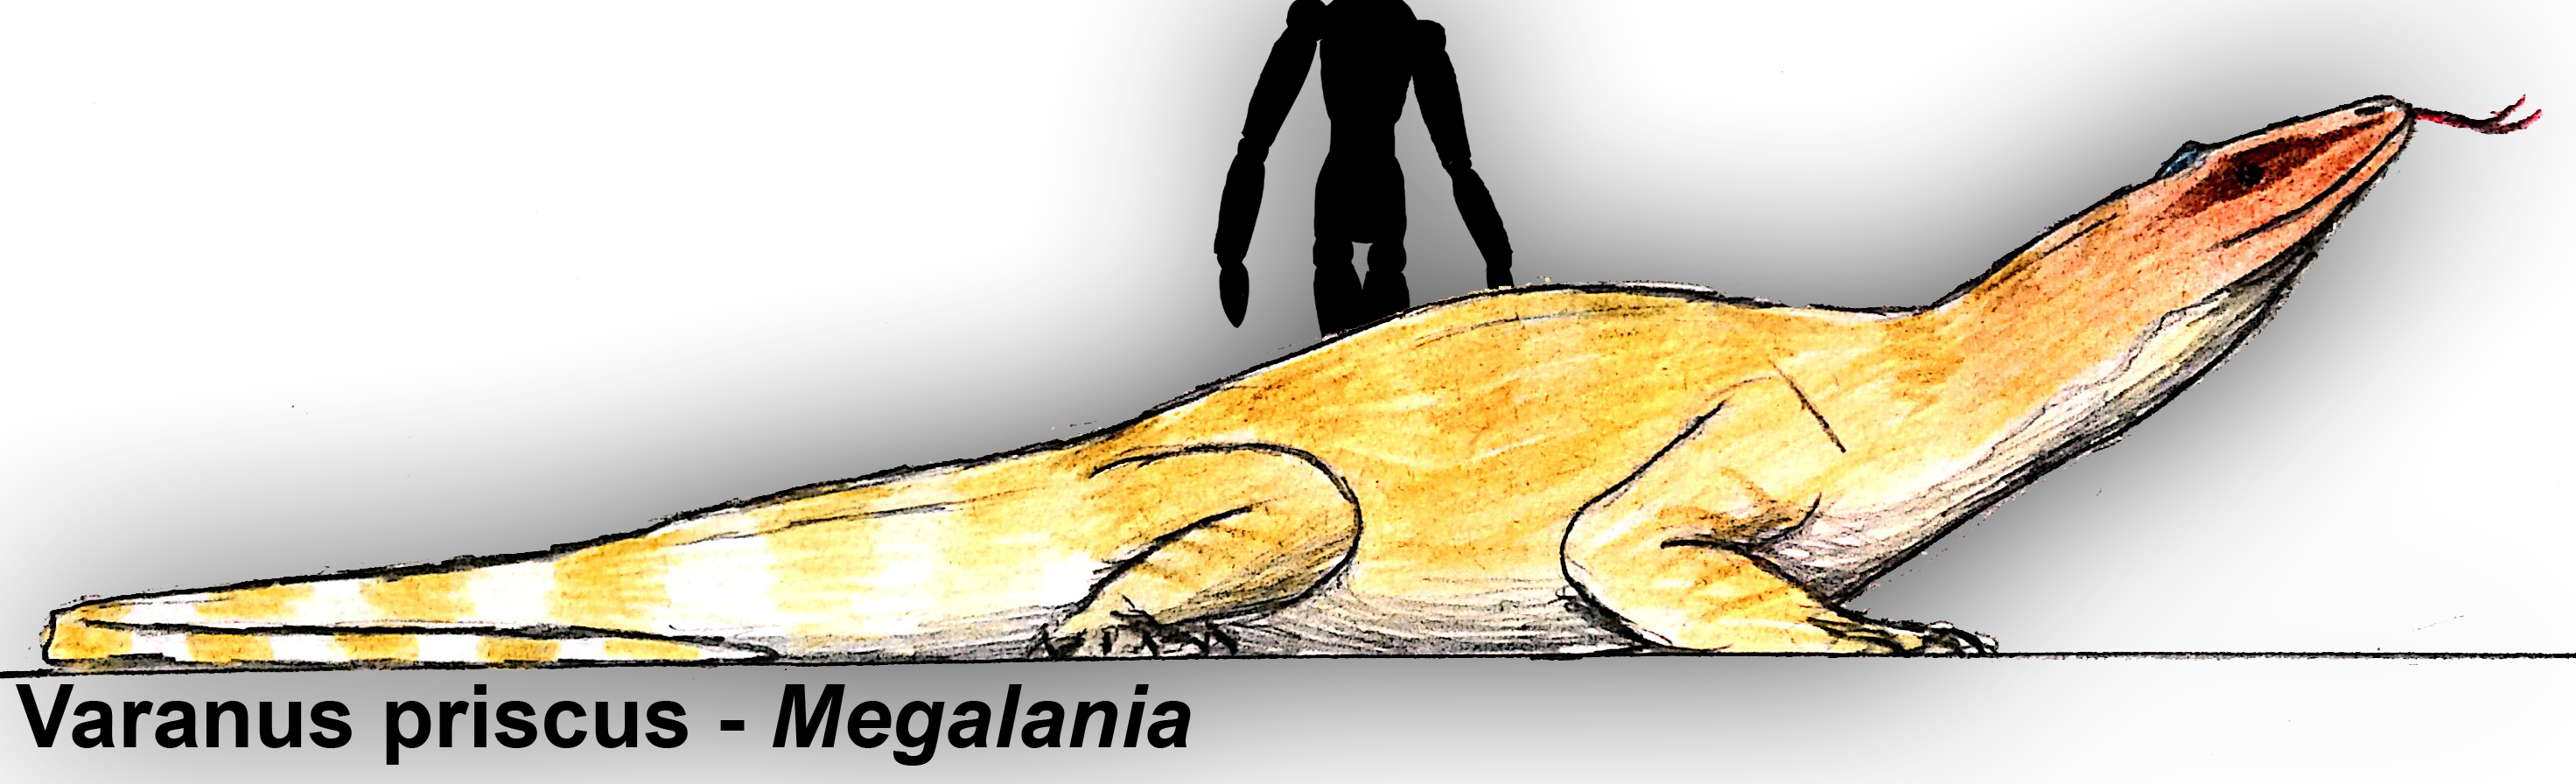 Varanus priscus - Megalania